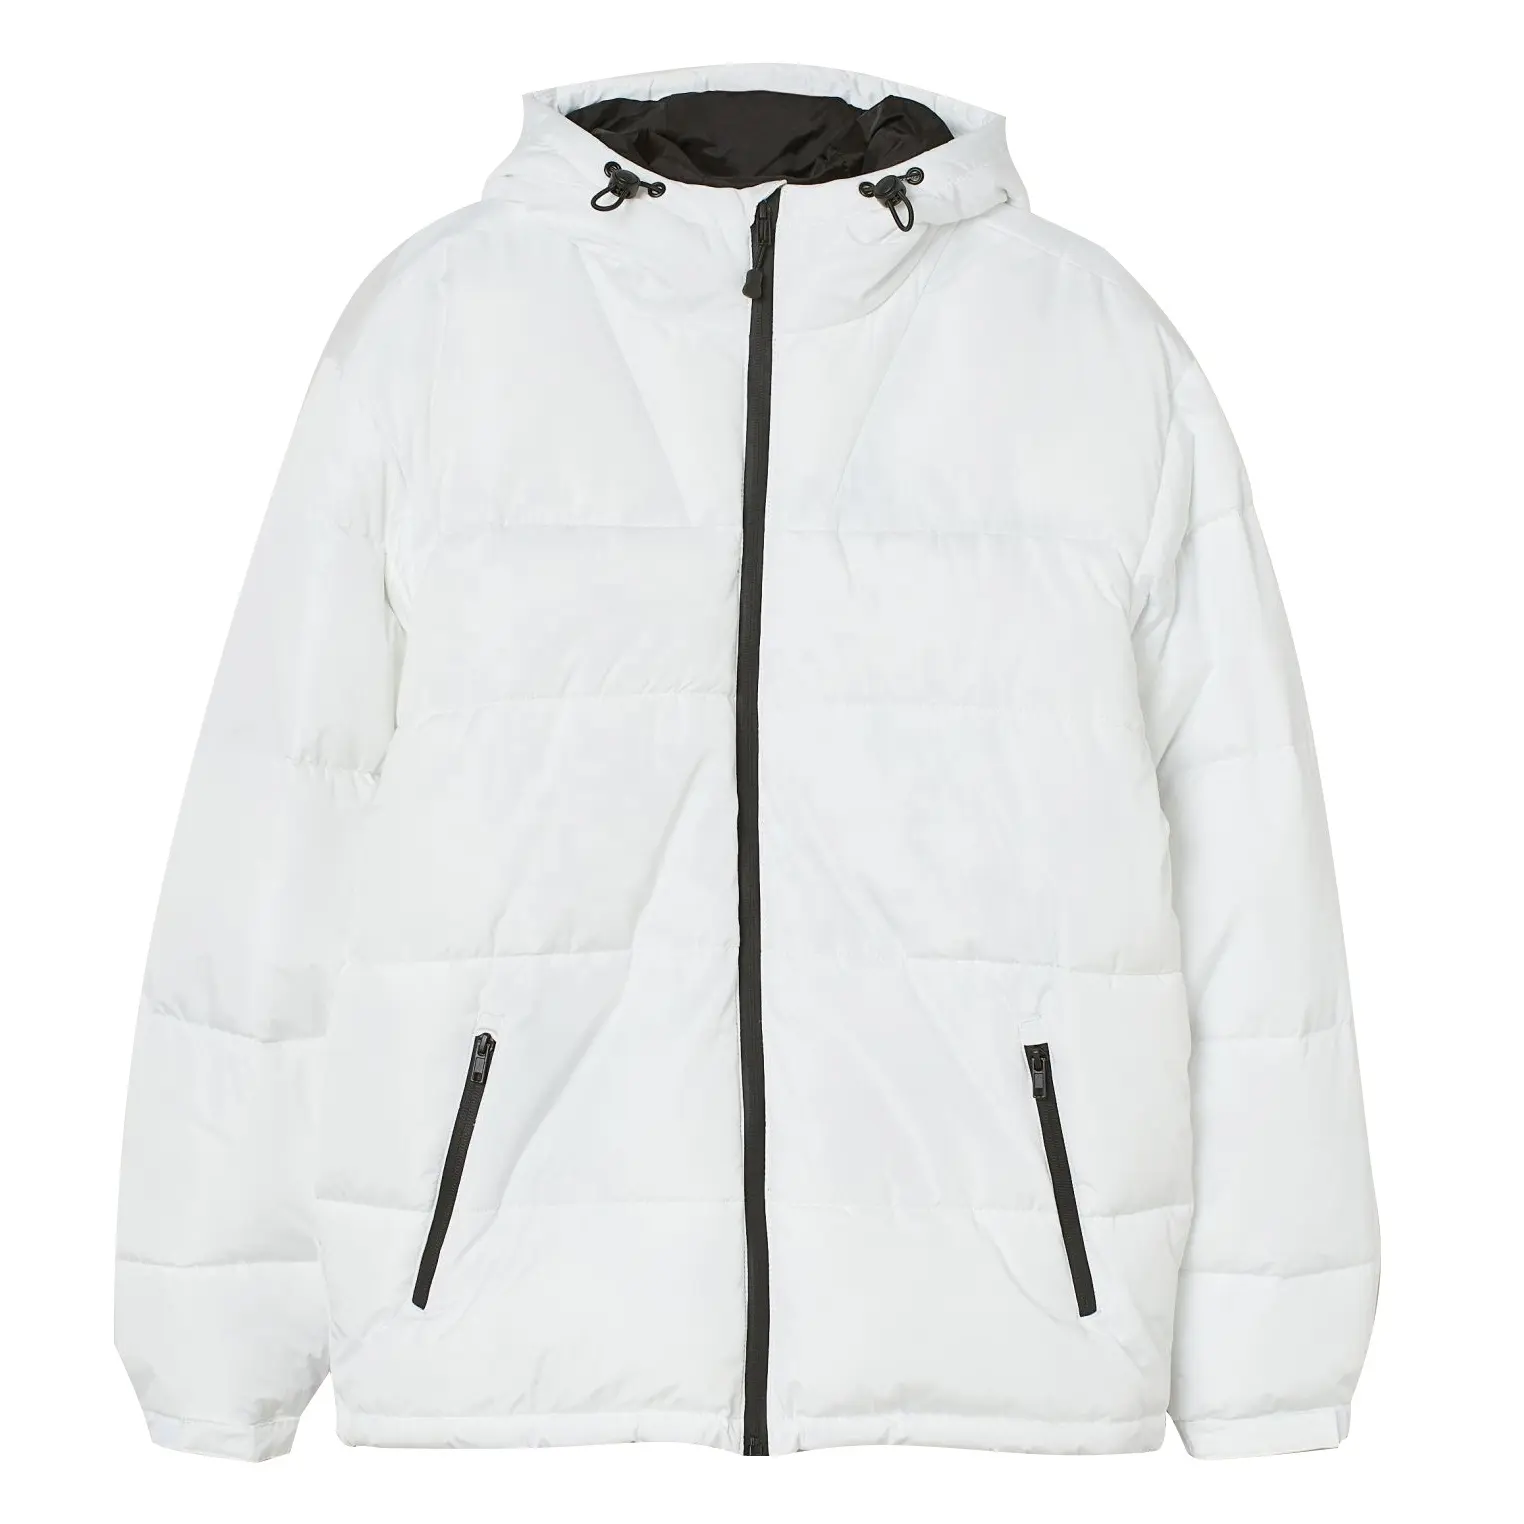 Özel logo erkekler moda balon ceket yastıklı kapşonlu kış ceket